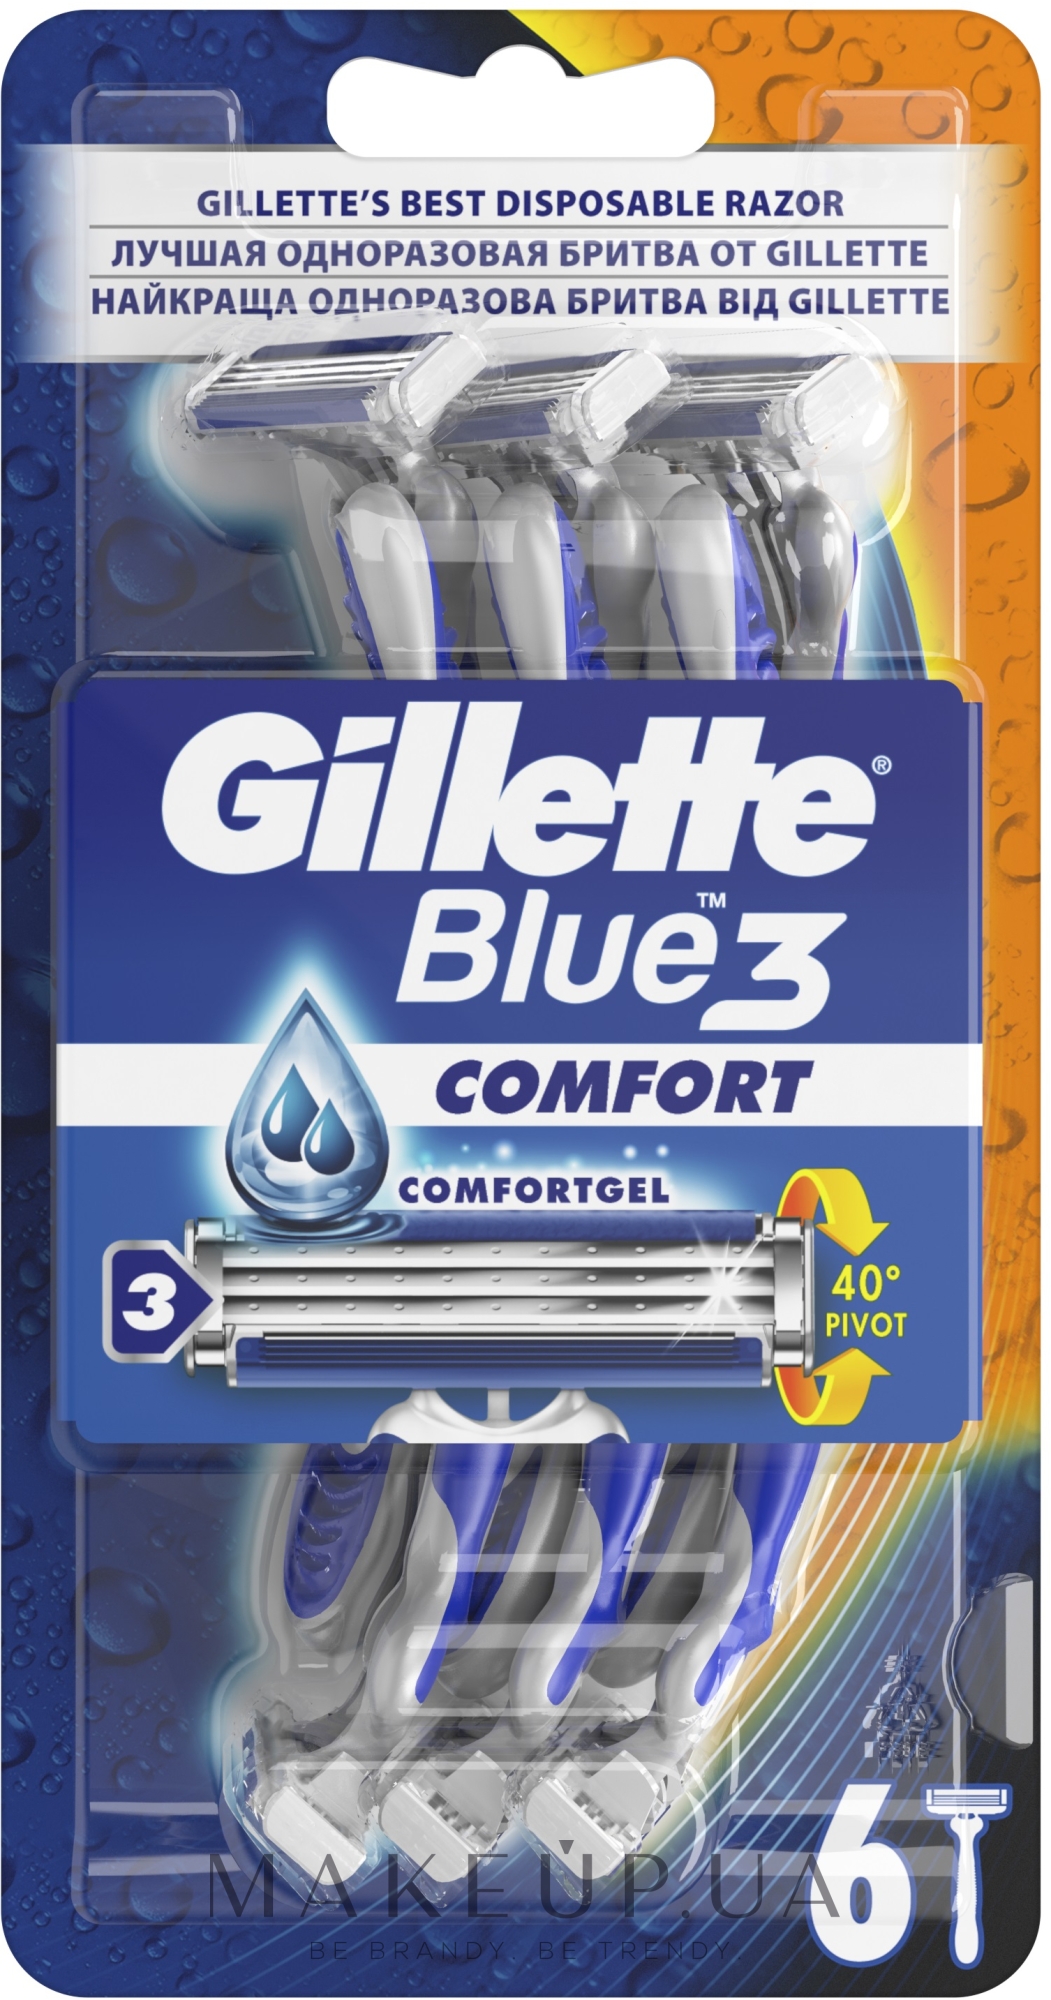 Набір одноразових станків для гоління, 6 шт. - Gillette Blue 3 Comfort — фото 6шт